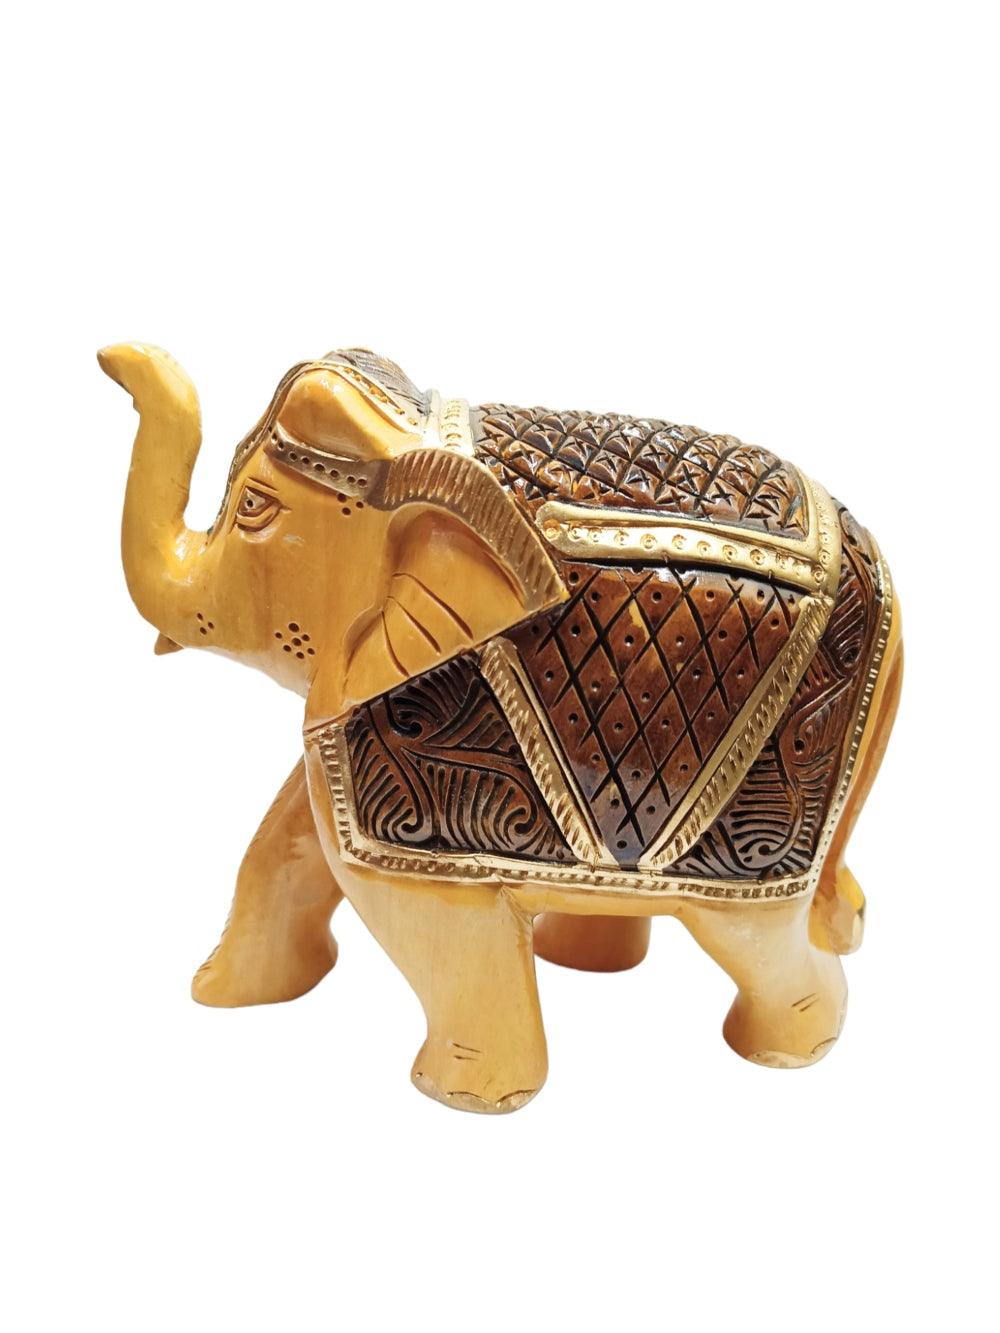 Wooden Elephant | Elephant 4 Piece Set | Handicrafts - ZANSKAR ARTS